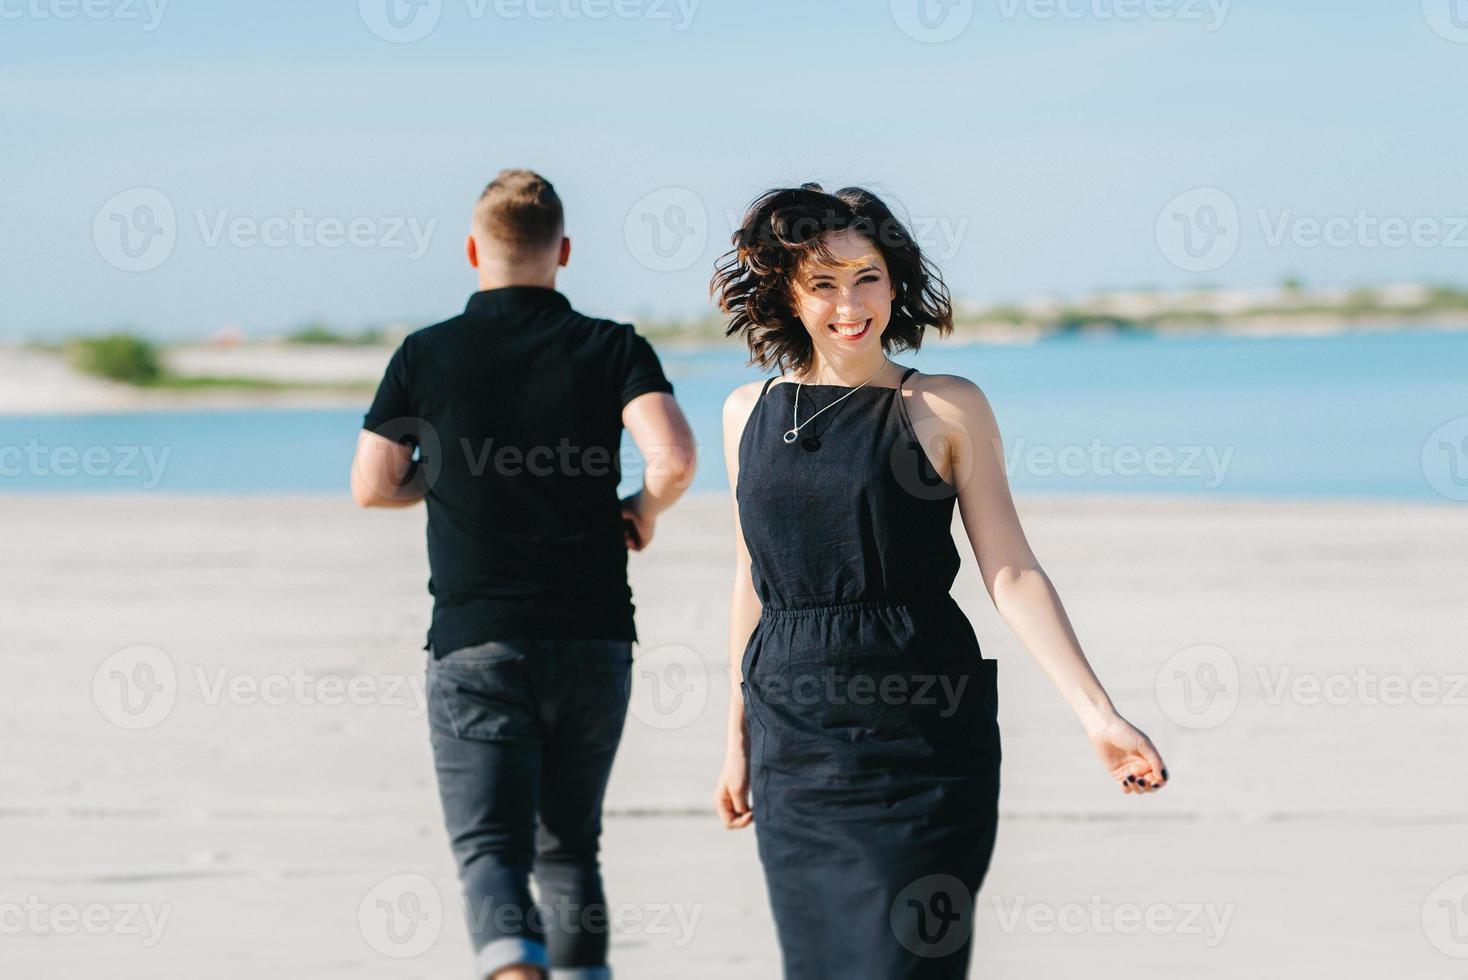 giovane coppia un ragazzo con una ragazza in abiti neri stanno camminando sulla sabbia bianca foto